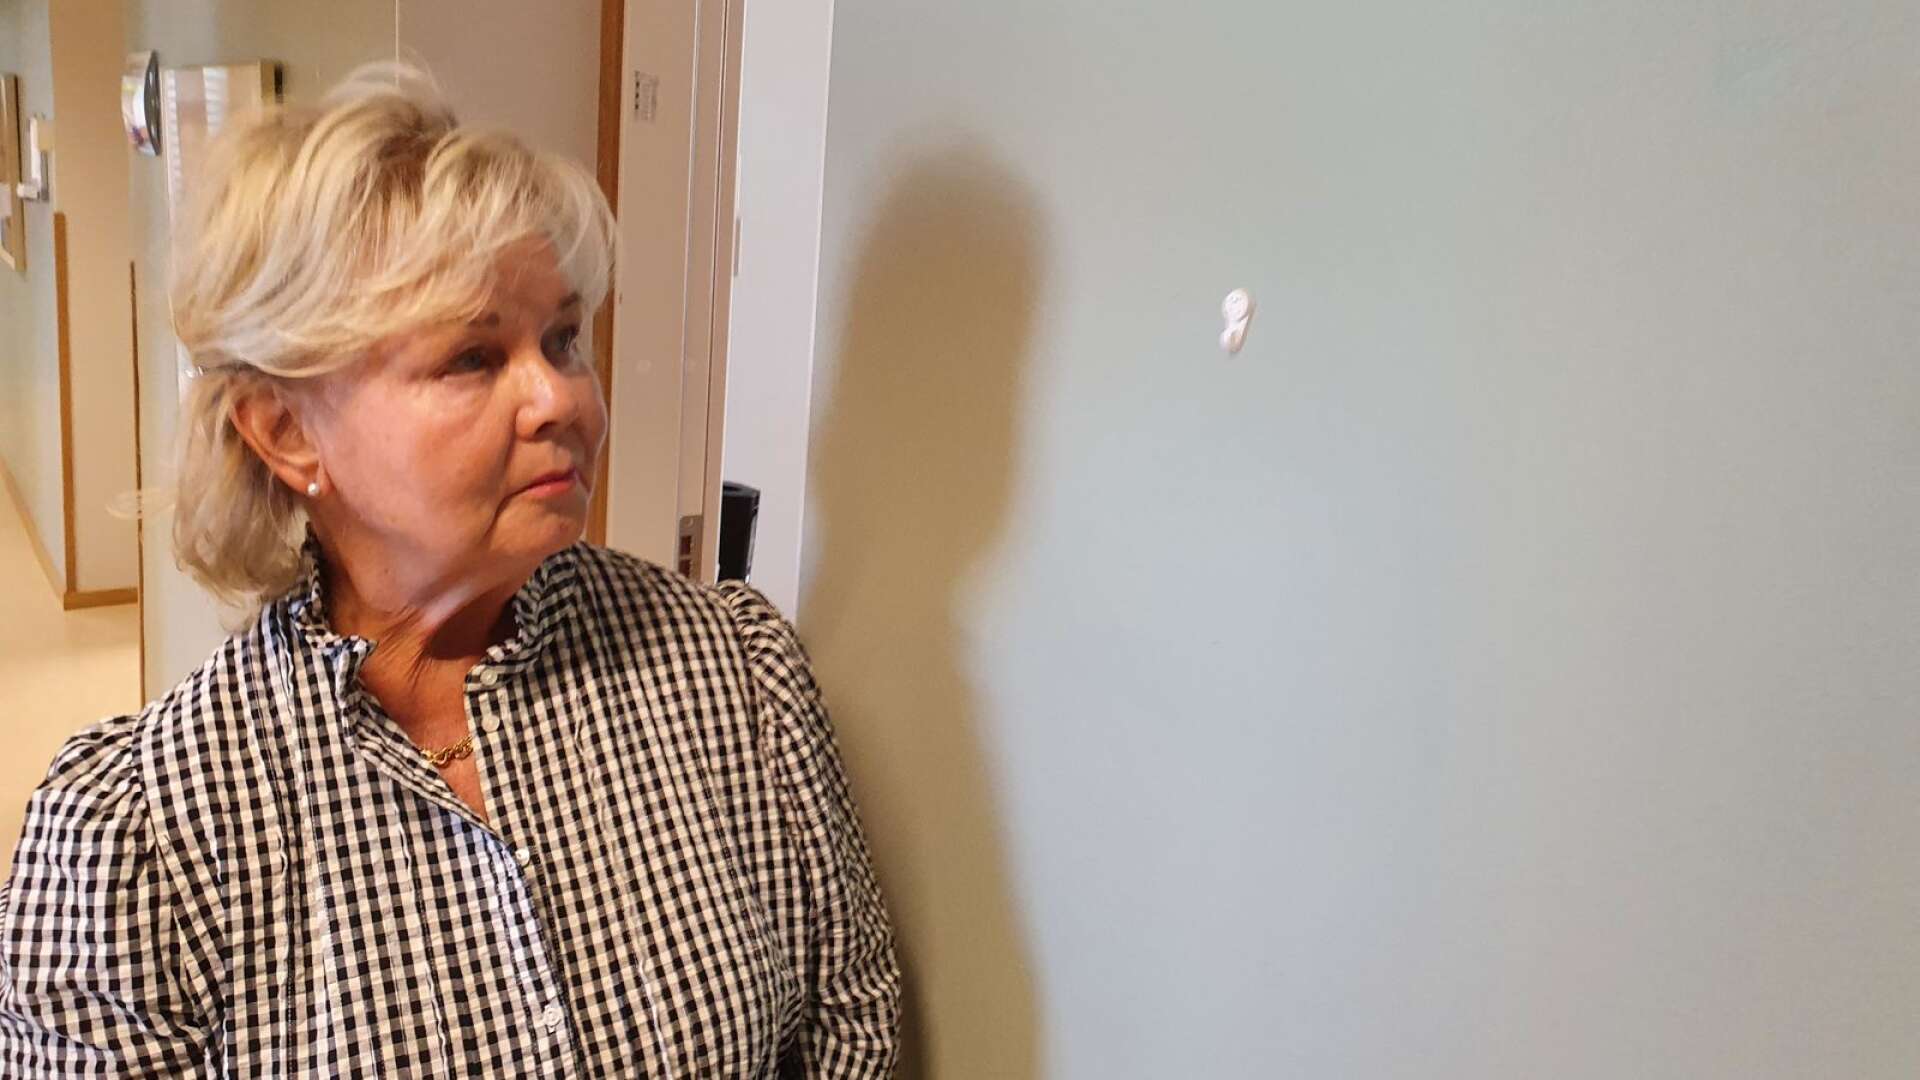 Åmålskonstnären Gunilla Kjellstedt motar sin Parkinson med regelbunden träning på Närhälsans rehab. Hon tyckte mycket om att hennes tavla ”Svart vallmo” hängde där. Nu är den stulen.